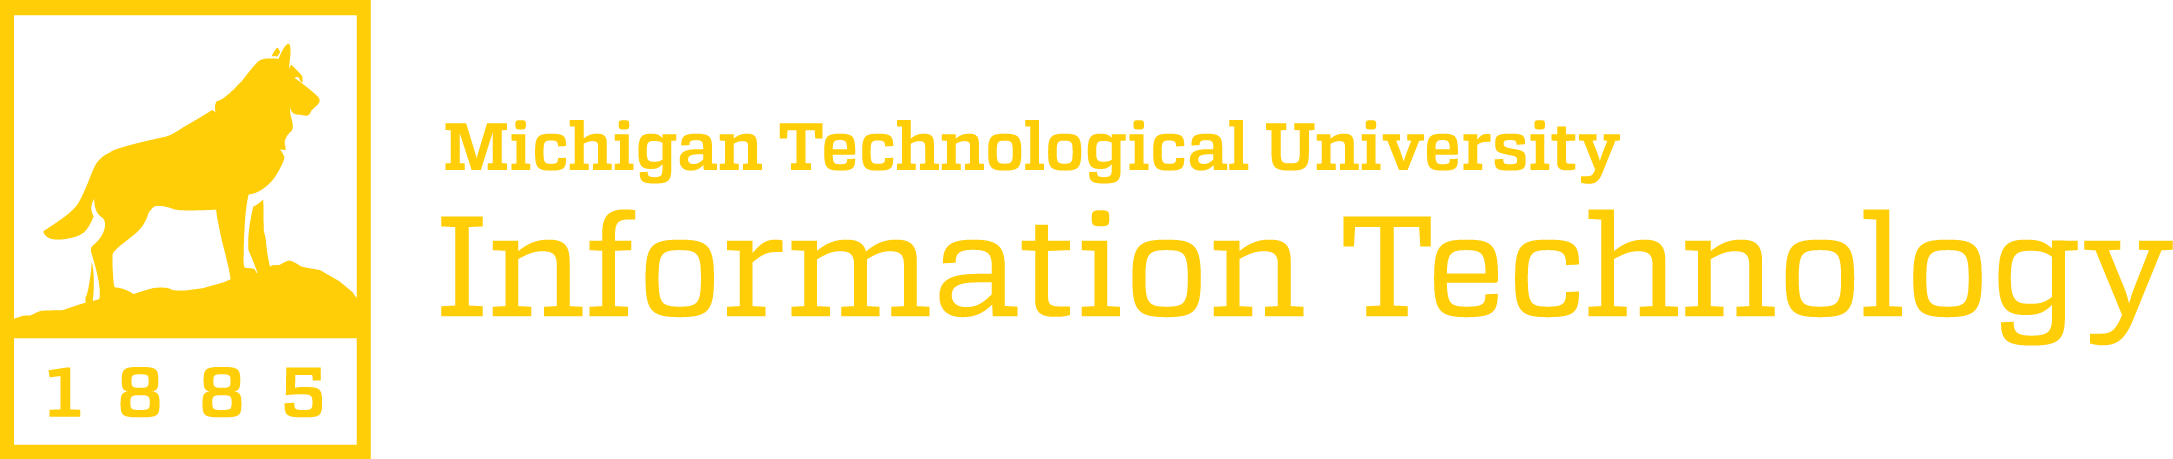 Michigan Tech IT Logo